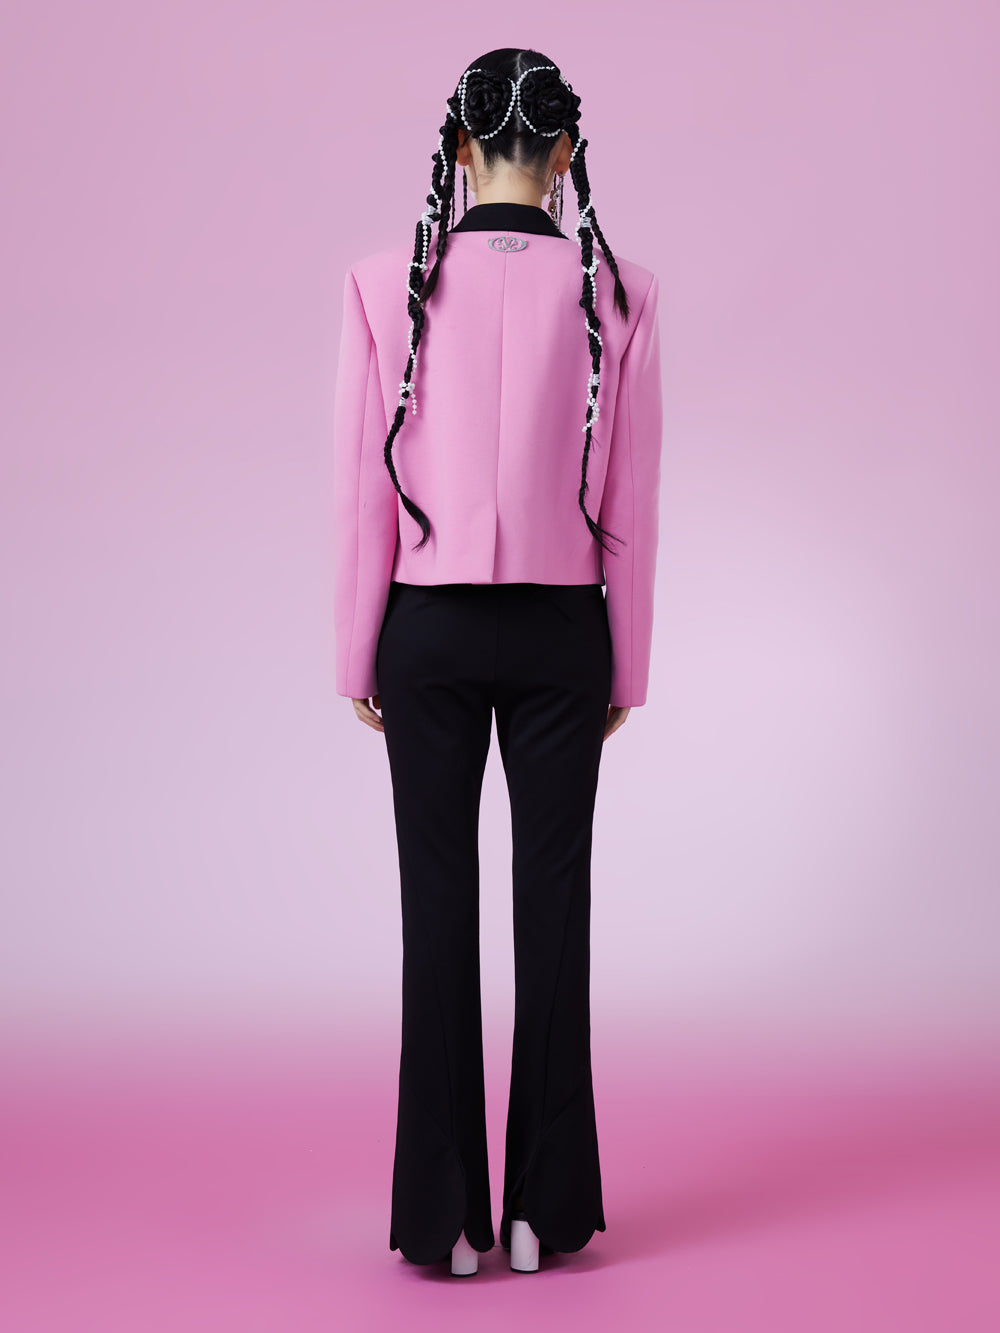 MUKZIN Fashion Color Matching Comfortable Llight Familiar Style Suit Coat